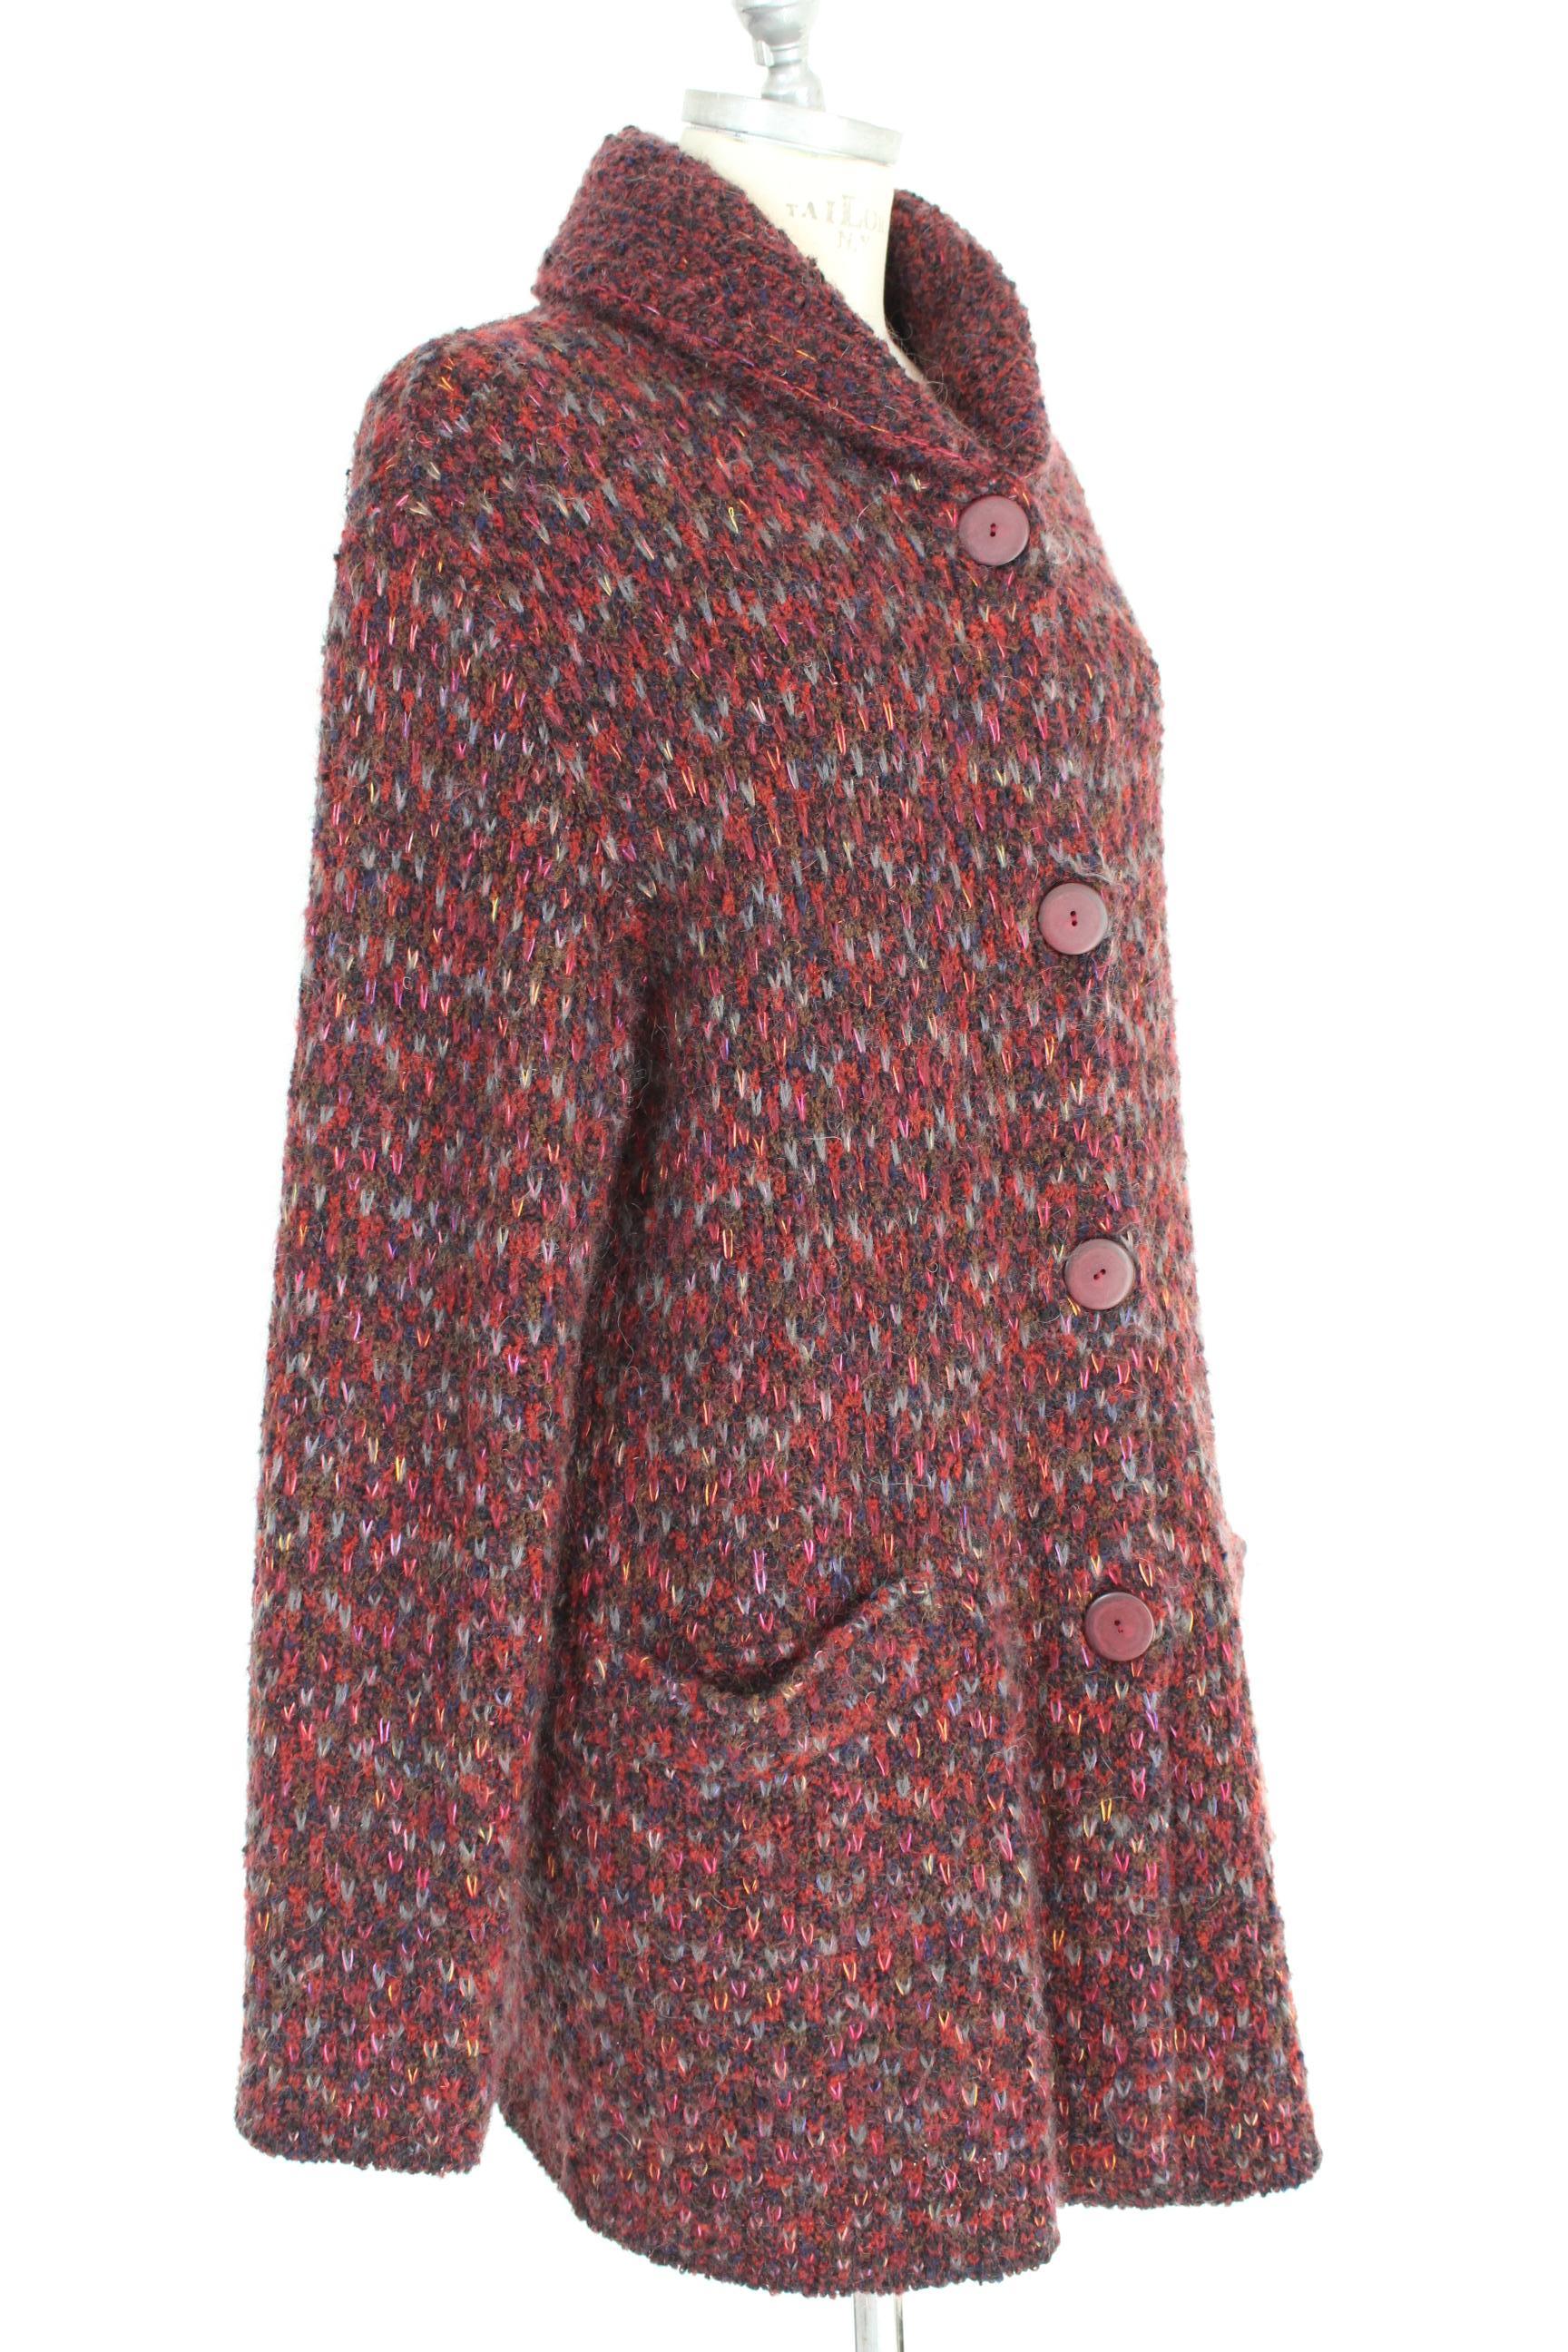 Women's Missoni Red Brown Alpaca Wool Mohair Tweed Jacket 1990s 